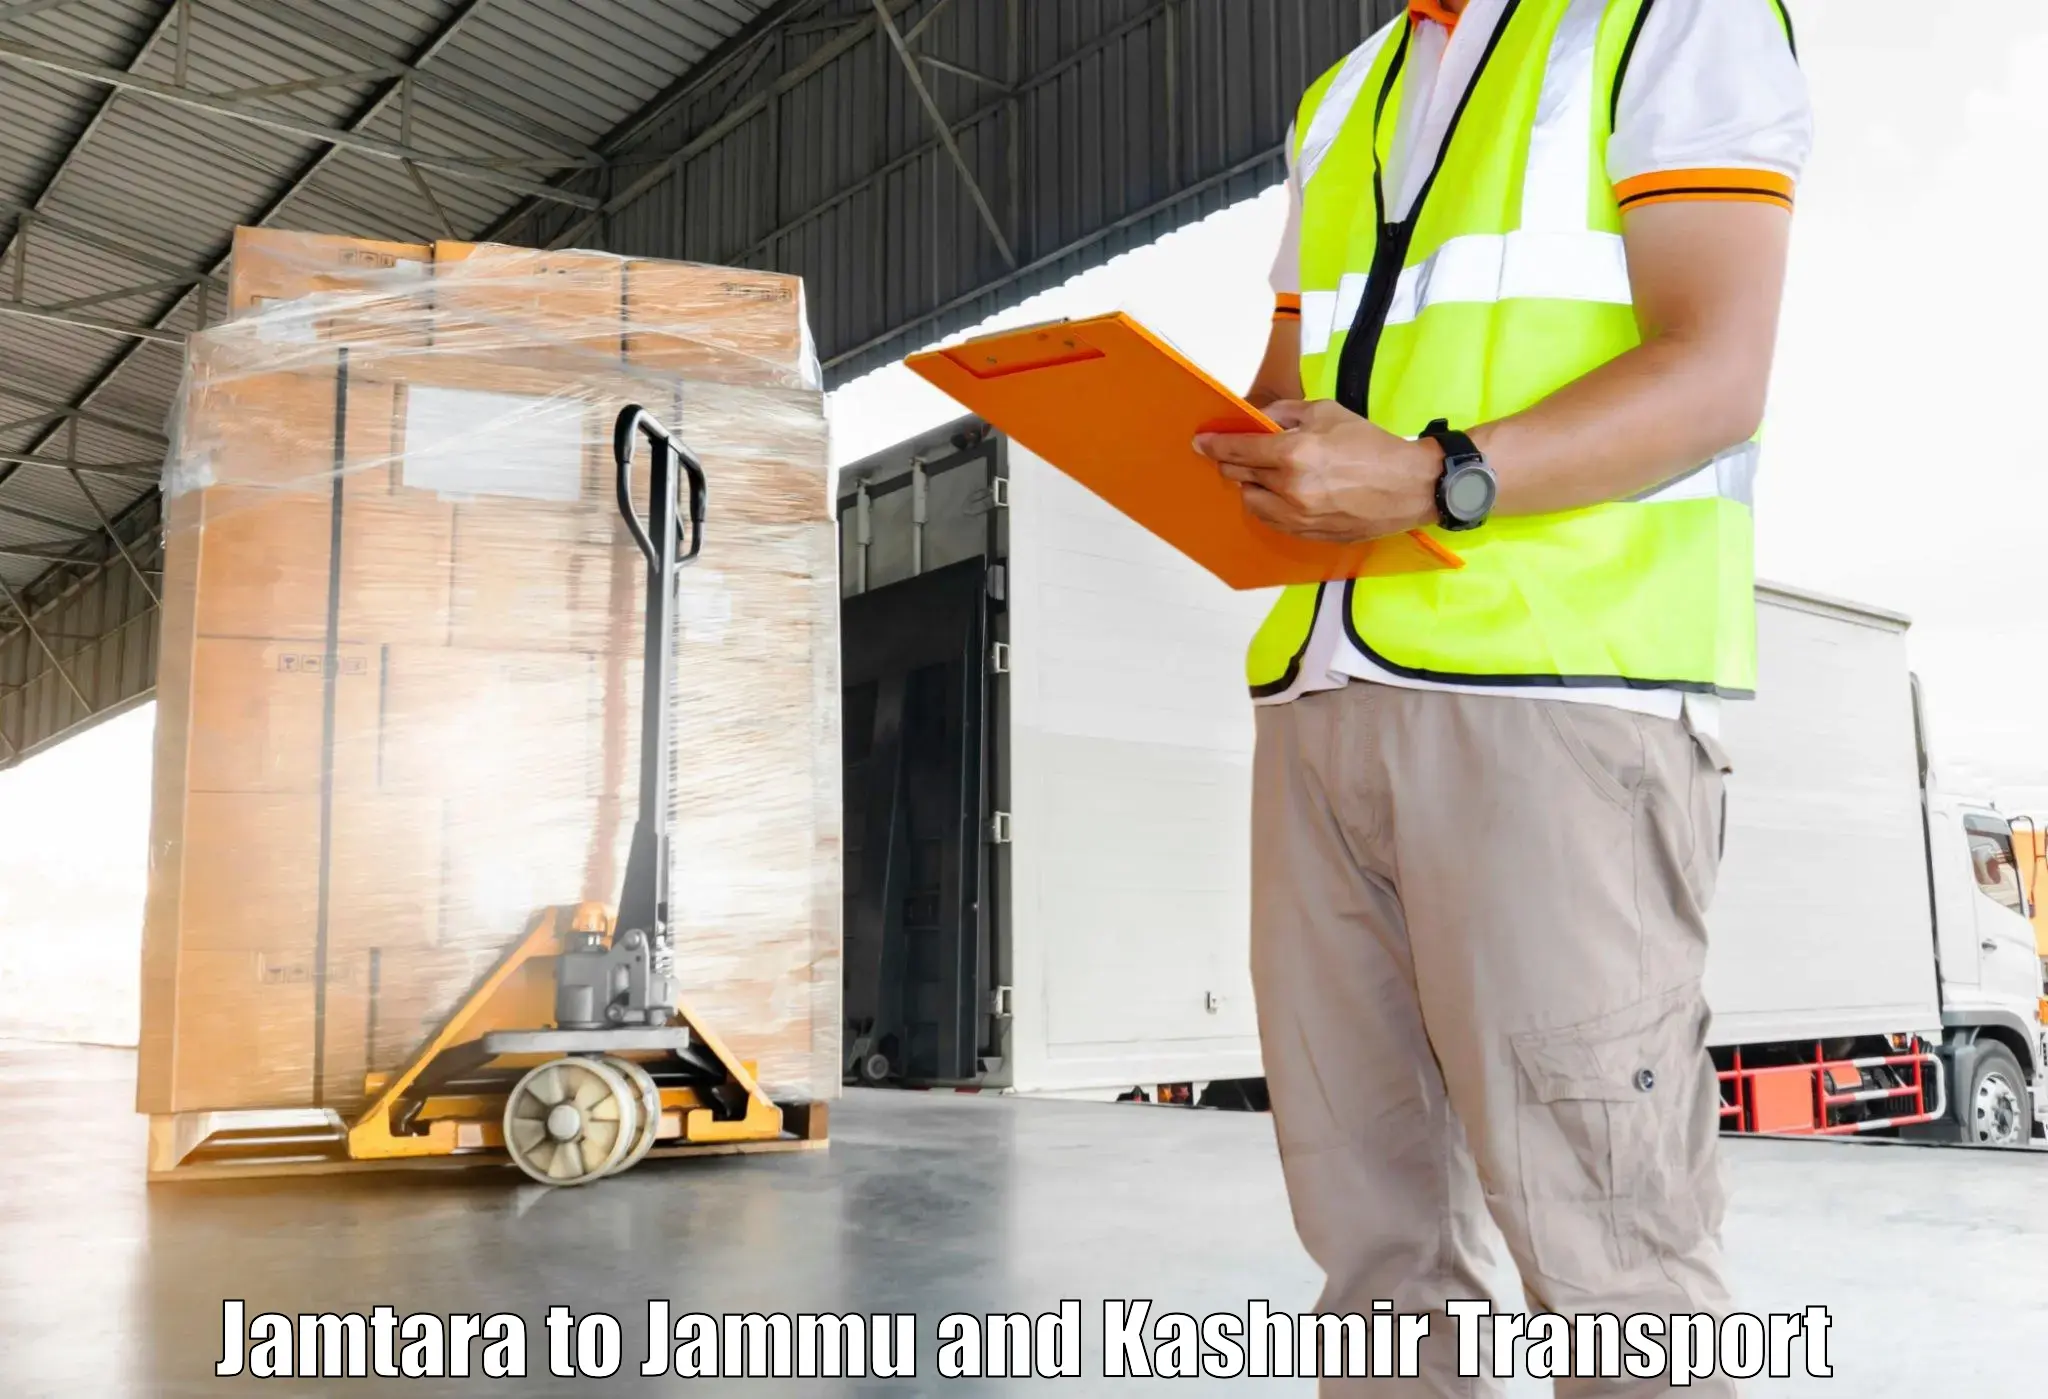 Lorry transport service Jamtara to Jammu and Kashmir